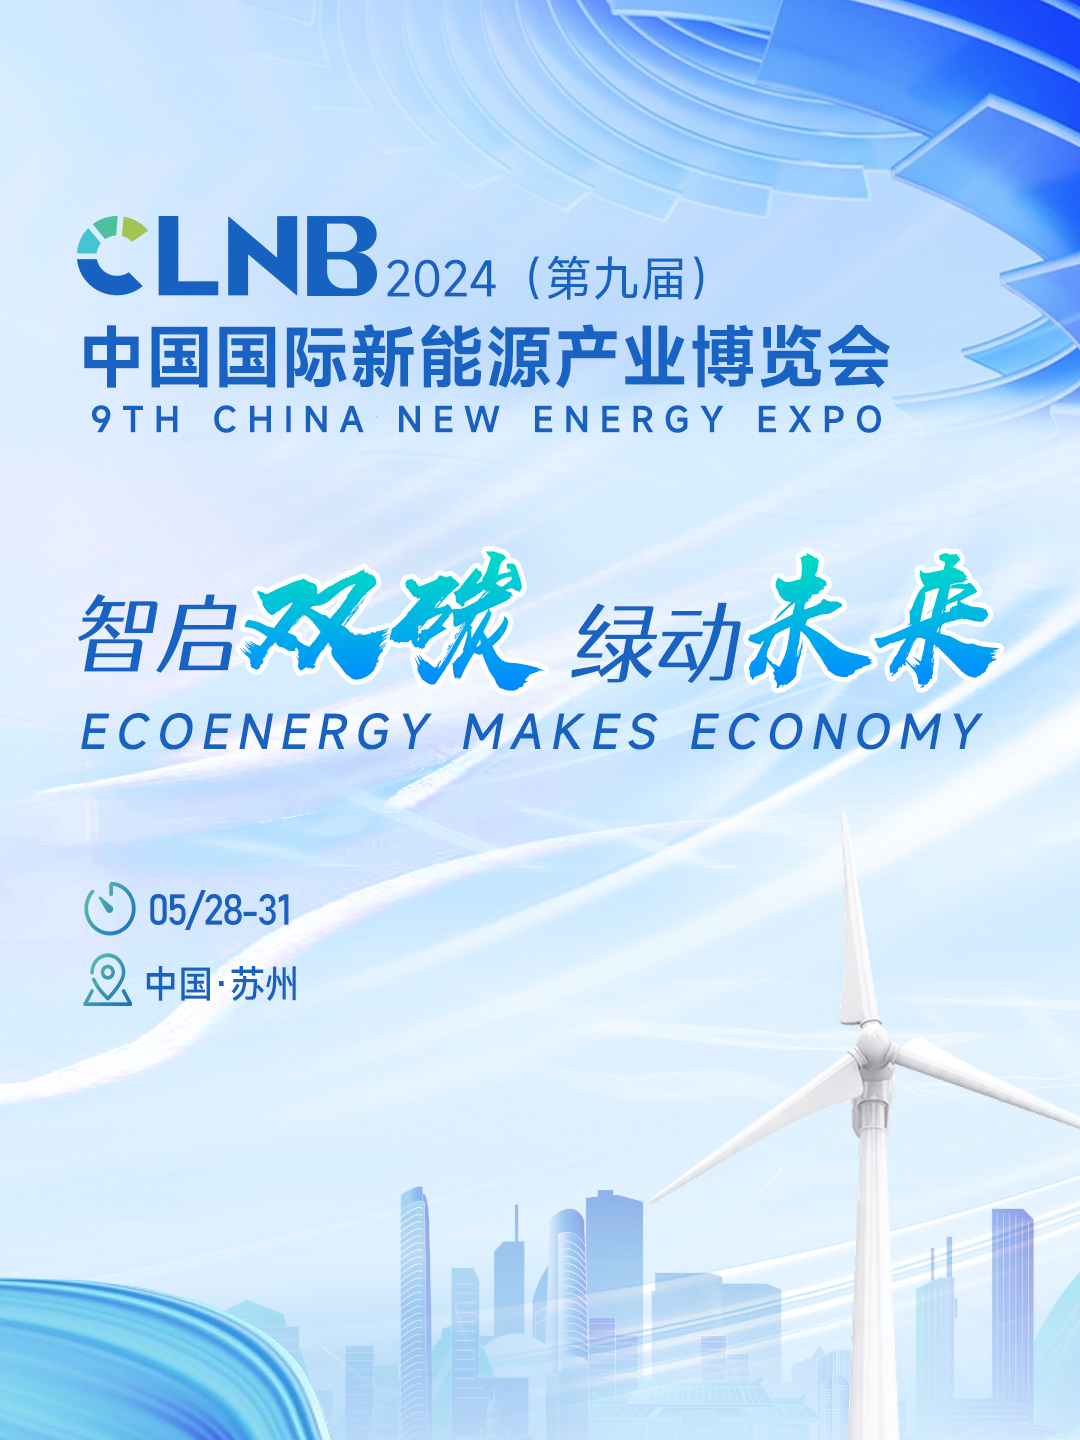 CLNB2024(第九届)中国国际新能源产业博览会